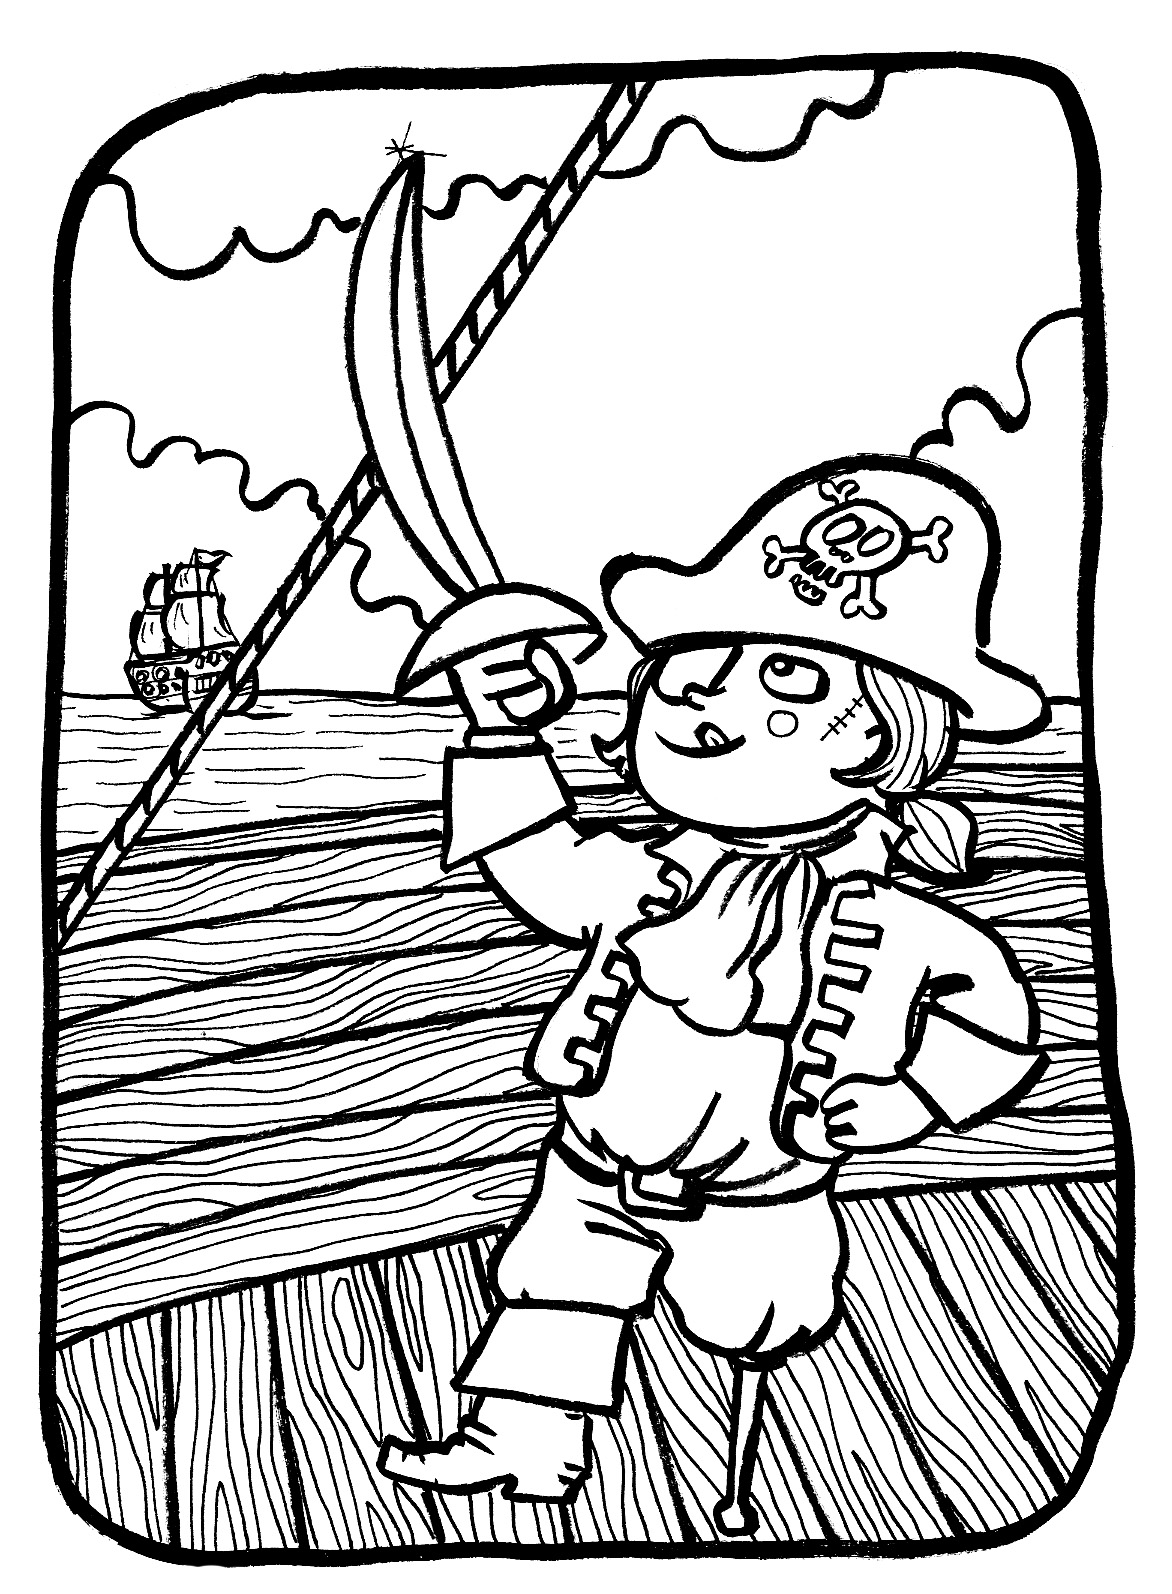 Colorir um simpático pirata do mar